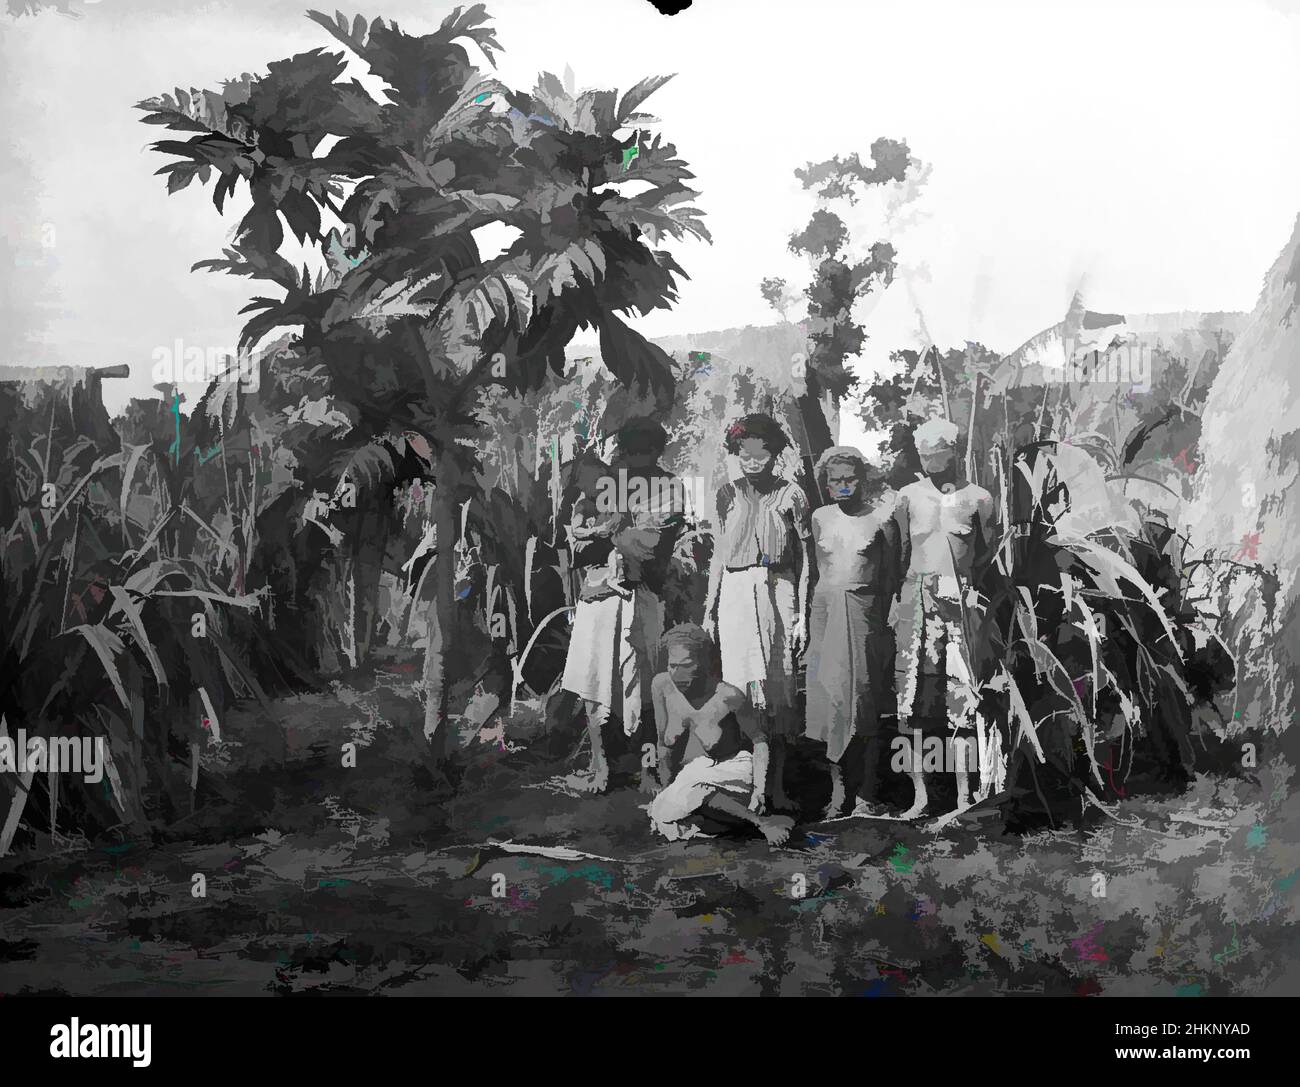 Arte ispirata dal villaggio Fijiano vicino a Suva, studio Burton Brothers, studio fotografico, 12 luglio 1884, Nuova Zelanda, Fotografia in bianco e nero, una donna seduta di fronte a quattro donne in standiing, una con il bambino nelle sue braccia. Un piccolo albero di breadfruit sta ombreggiando la donna con il bambino, dietro è, opere classiche modernizzate da Artotop con un tuffo di modernità. Forme, colore e valore, impatto visivo accattivante sulle emozioni artistiche attraverso la libertà delle opere d'arte in modo contemporaneo. Un messaggio senza tempo che persegue una nuova direzione selvaggiamente creativa. Artisti che si rivolgono al supporto digitale e creano l'NFT Artotop Foto Stock